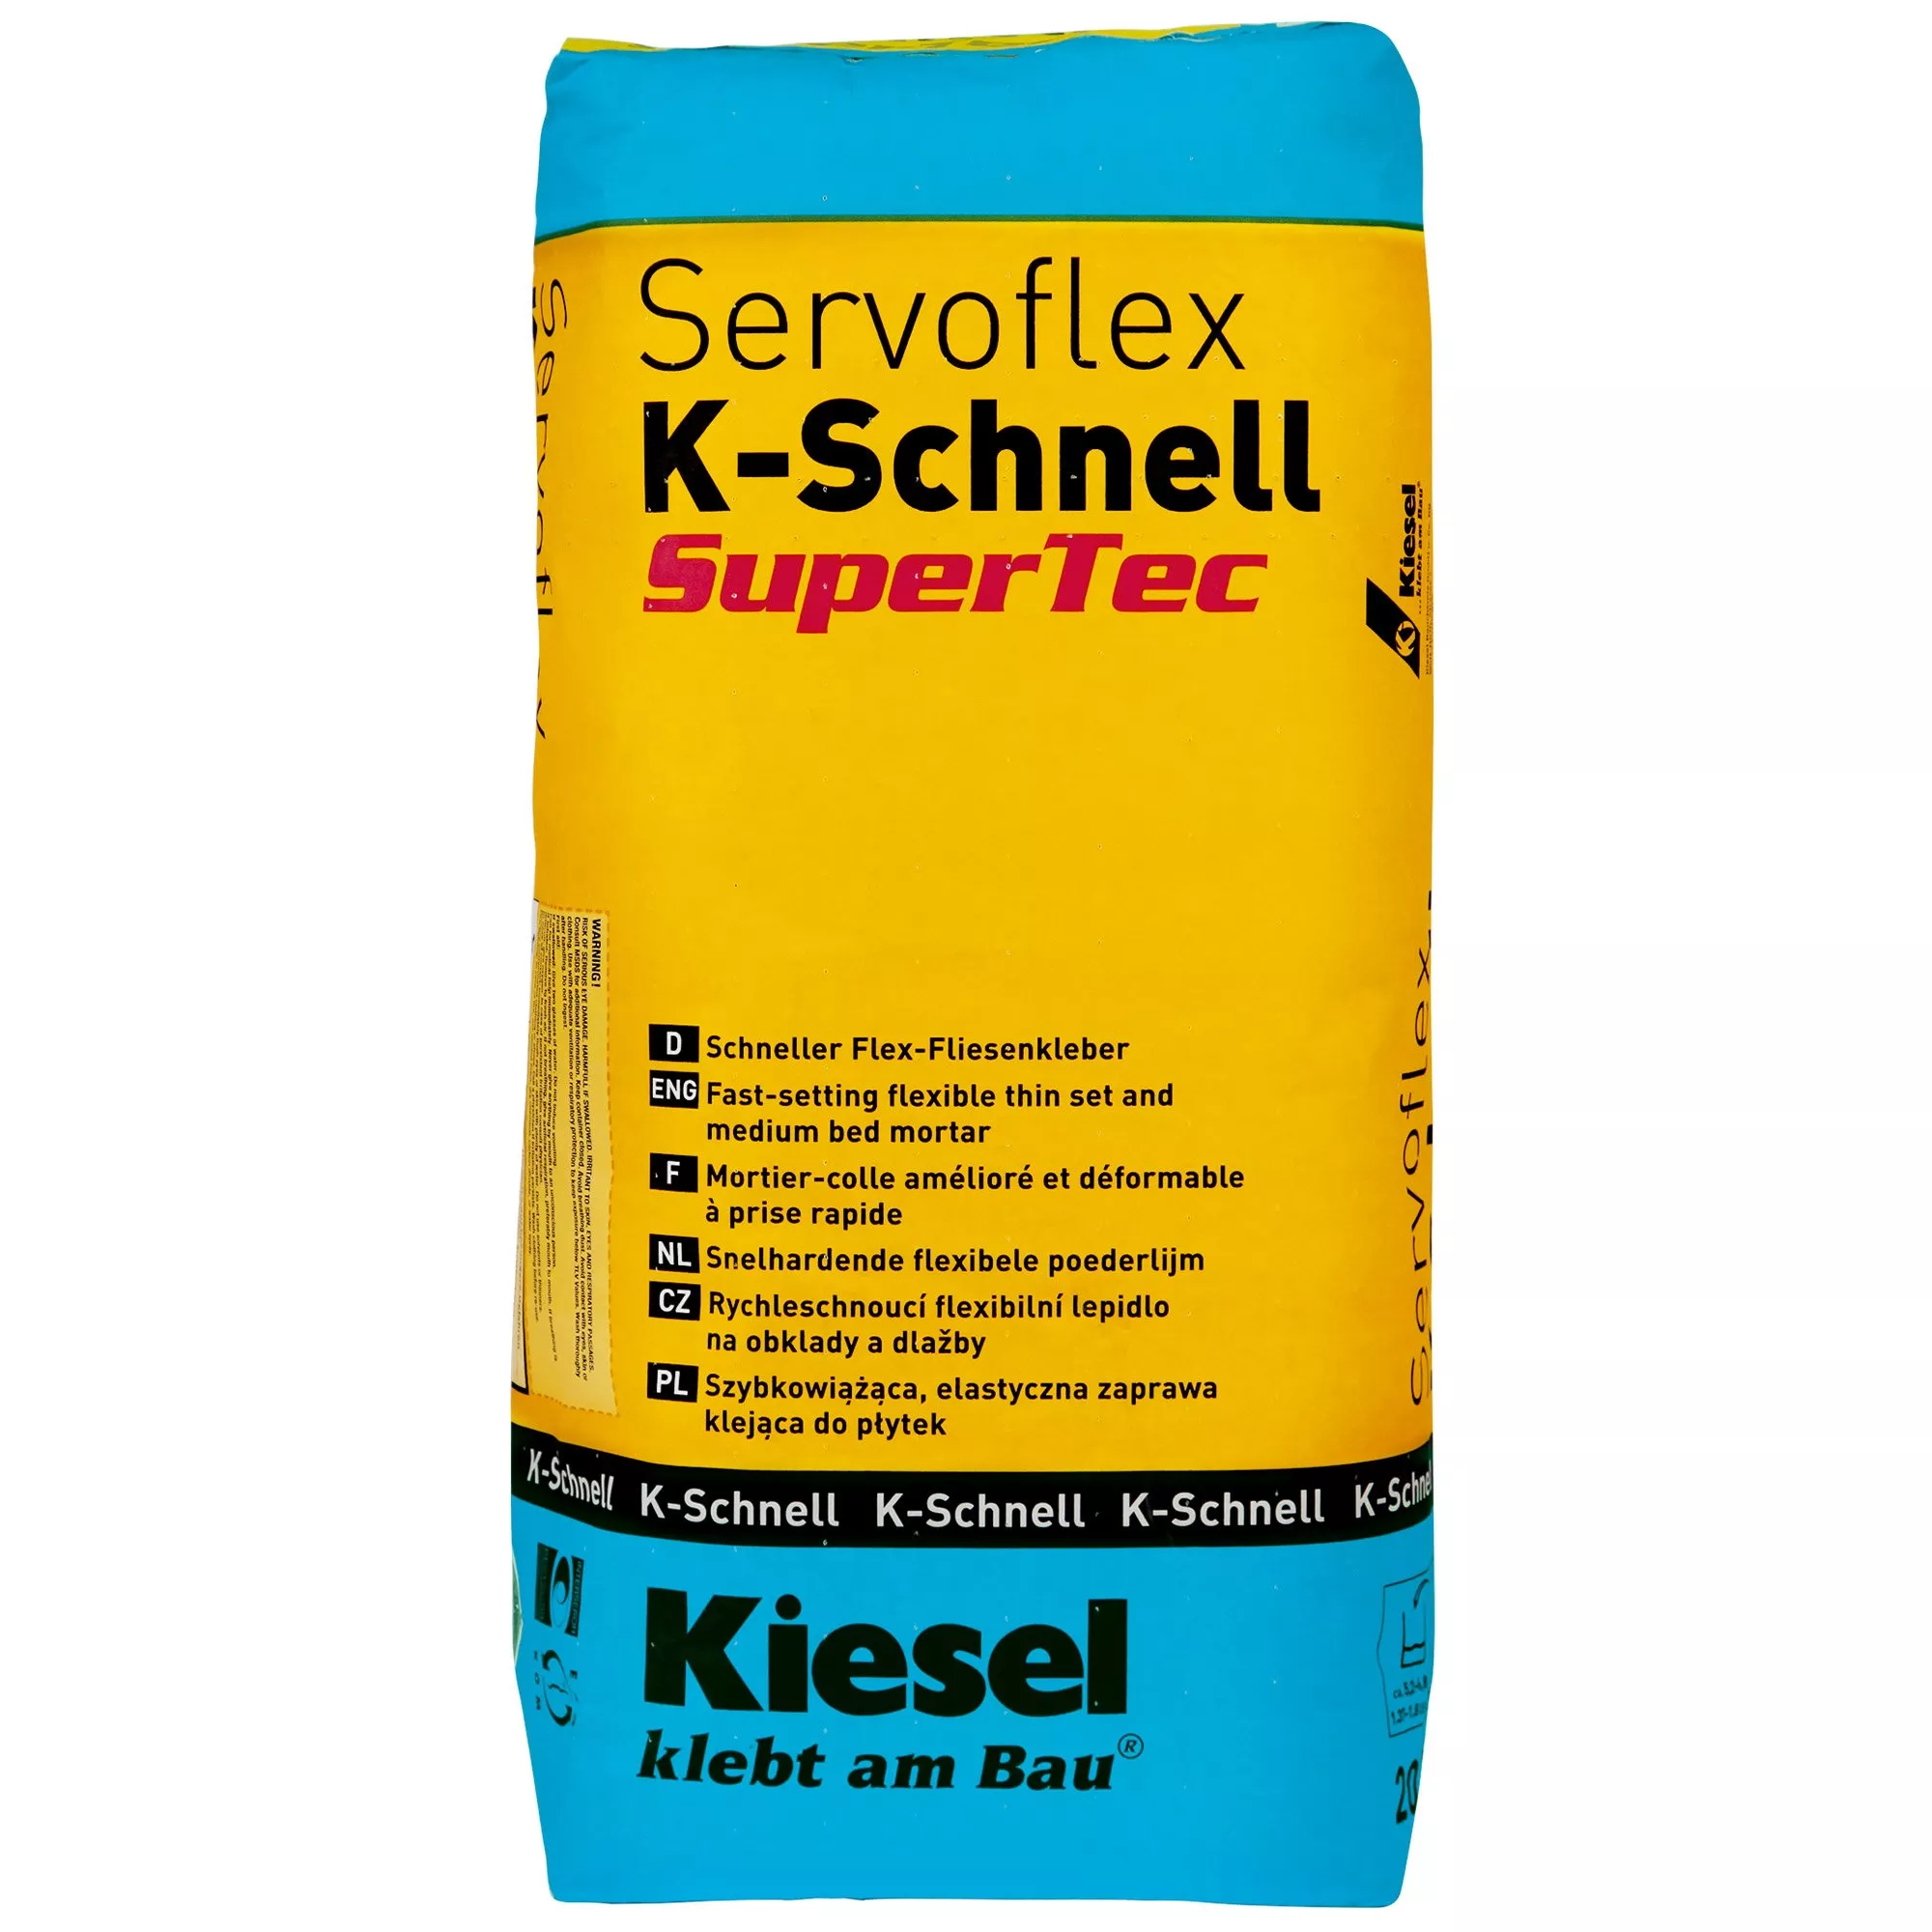 Kiesel Servoflex K-Schnell - Pokrycia Wielkoformatowe Szybki Klej Do Płytek (20KG)